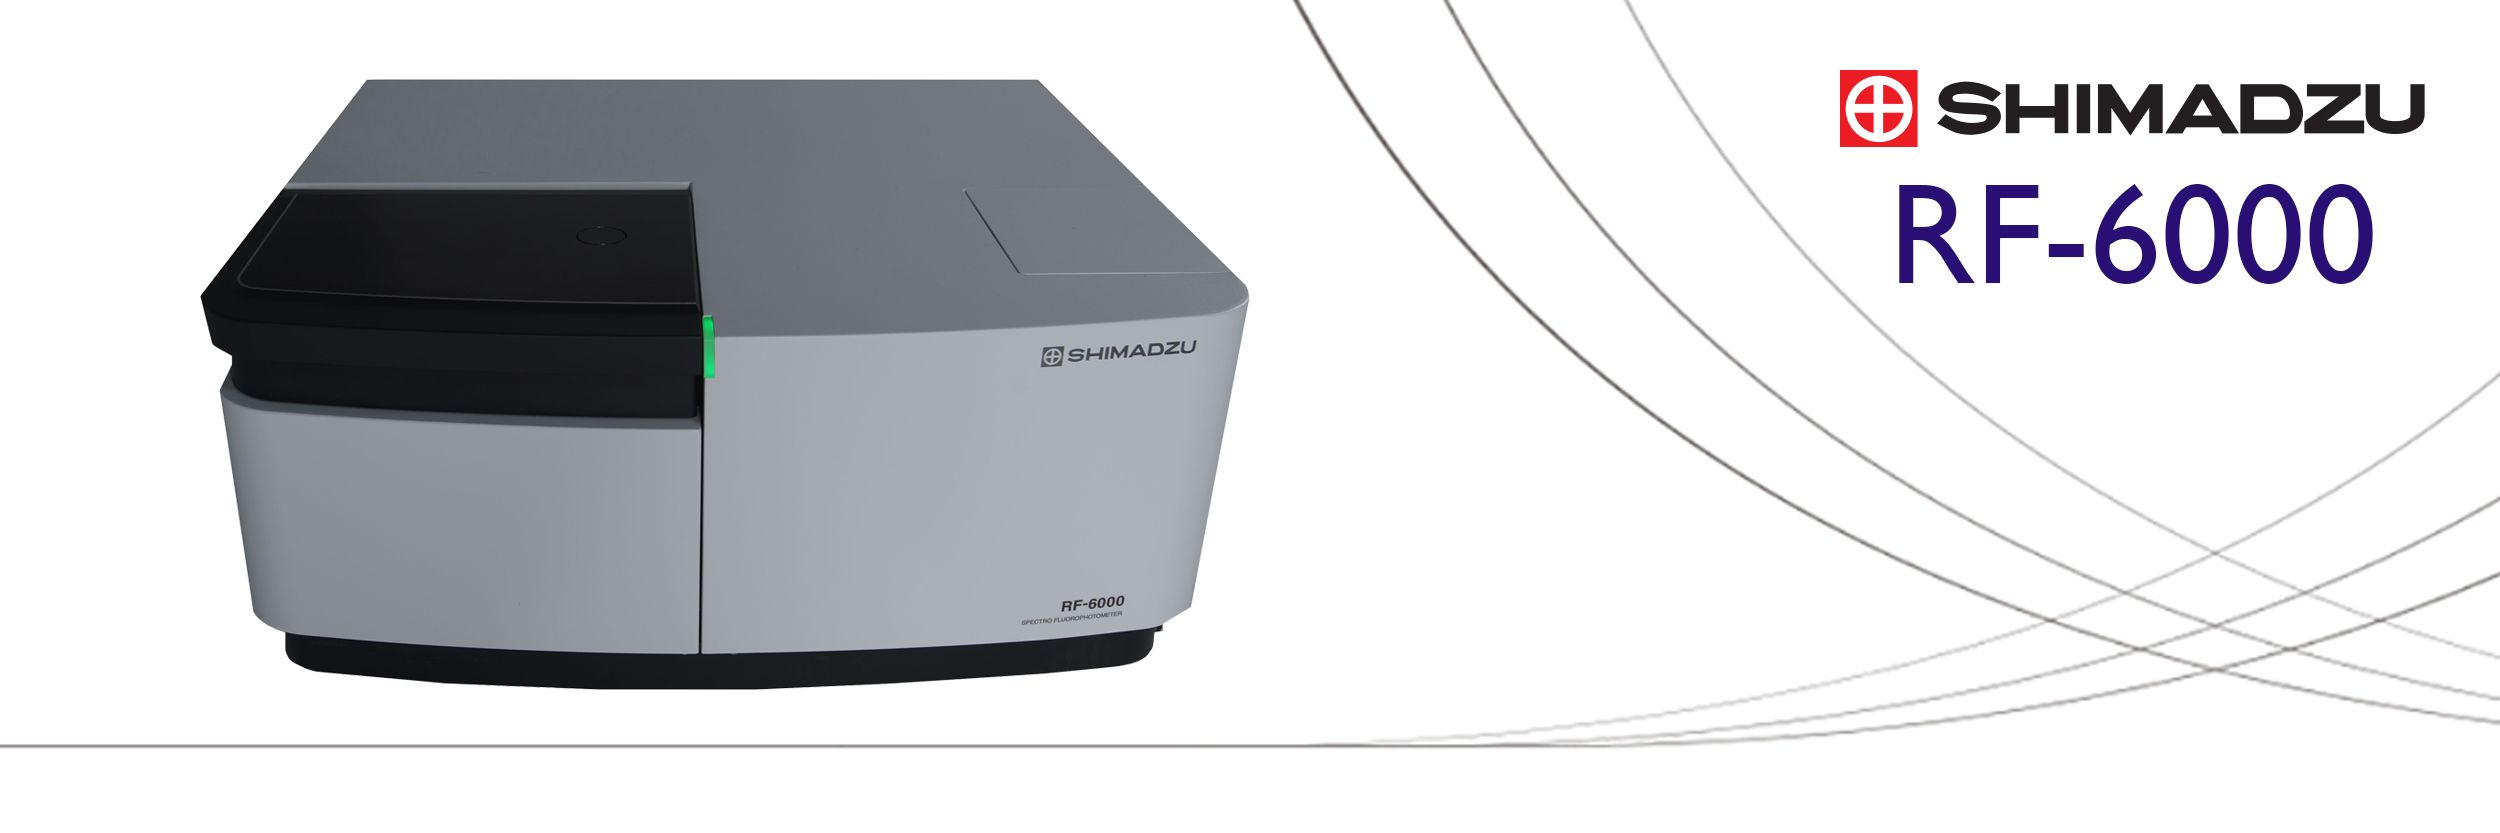 Espectrofluorómetro Shimadzu RF-6000: El mejor nivel de relación señal/ruido en su clase